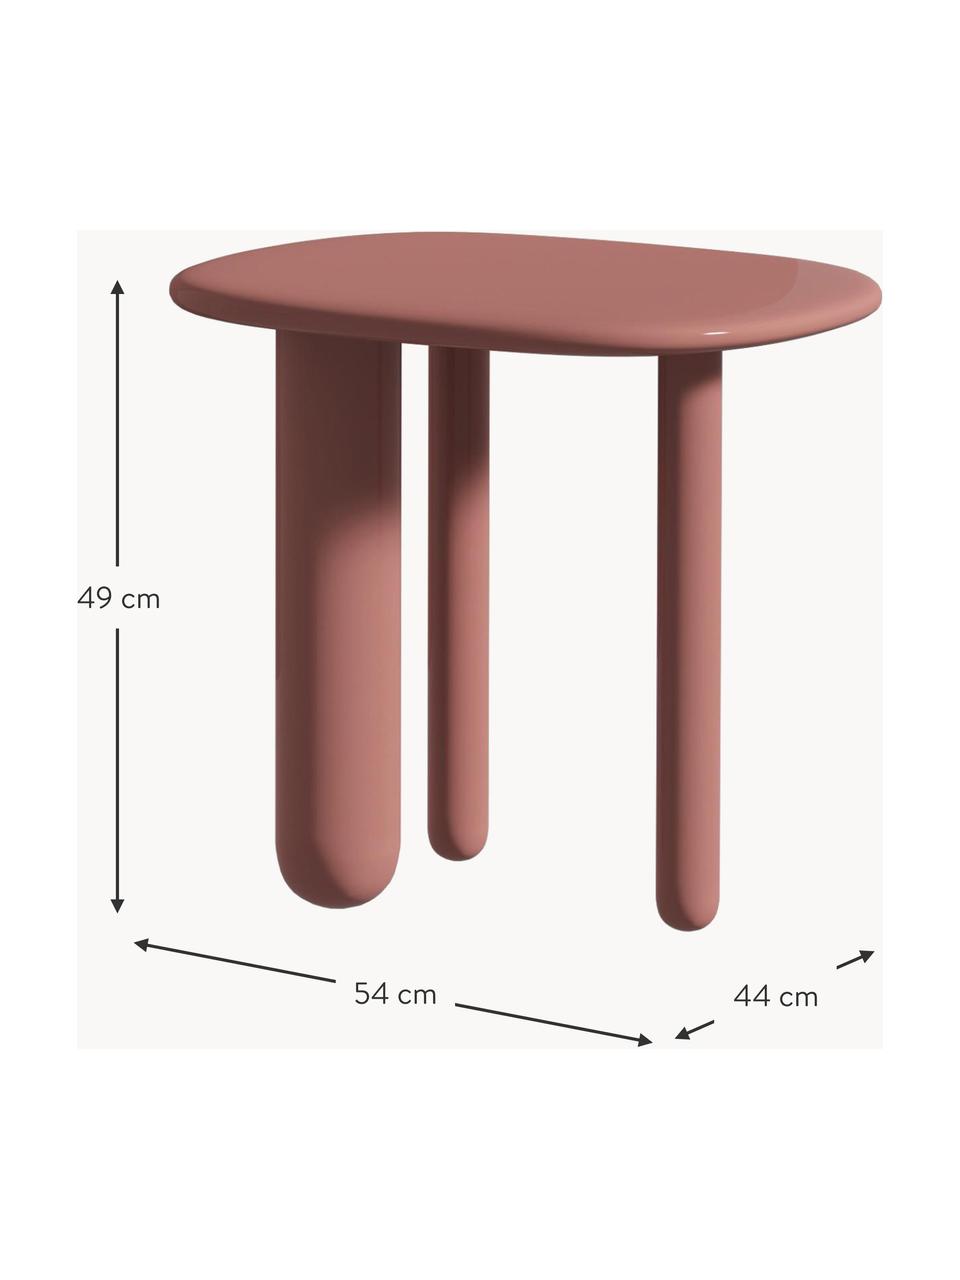 Oválny odkladací stolík Tottori, Lakovaná MDF-doska strednej hustoty, Drevo, staroružová lakované, Š 54 x V 49 cm